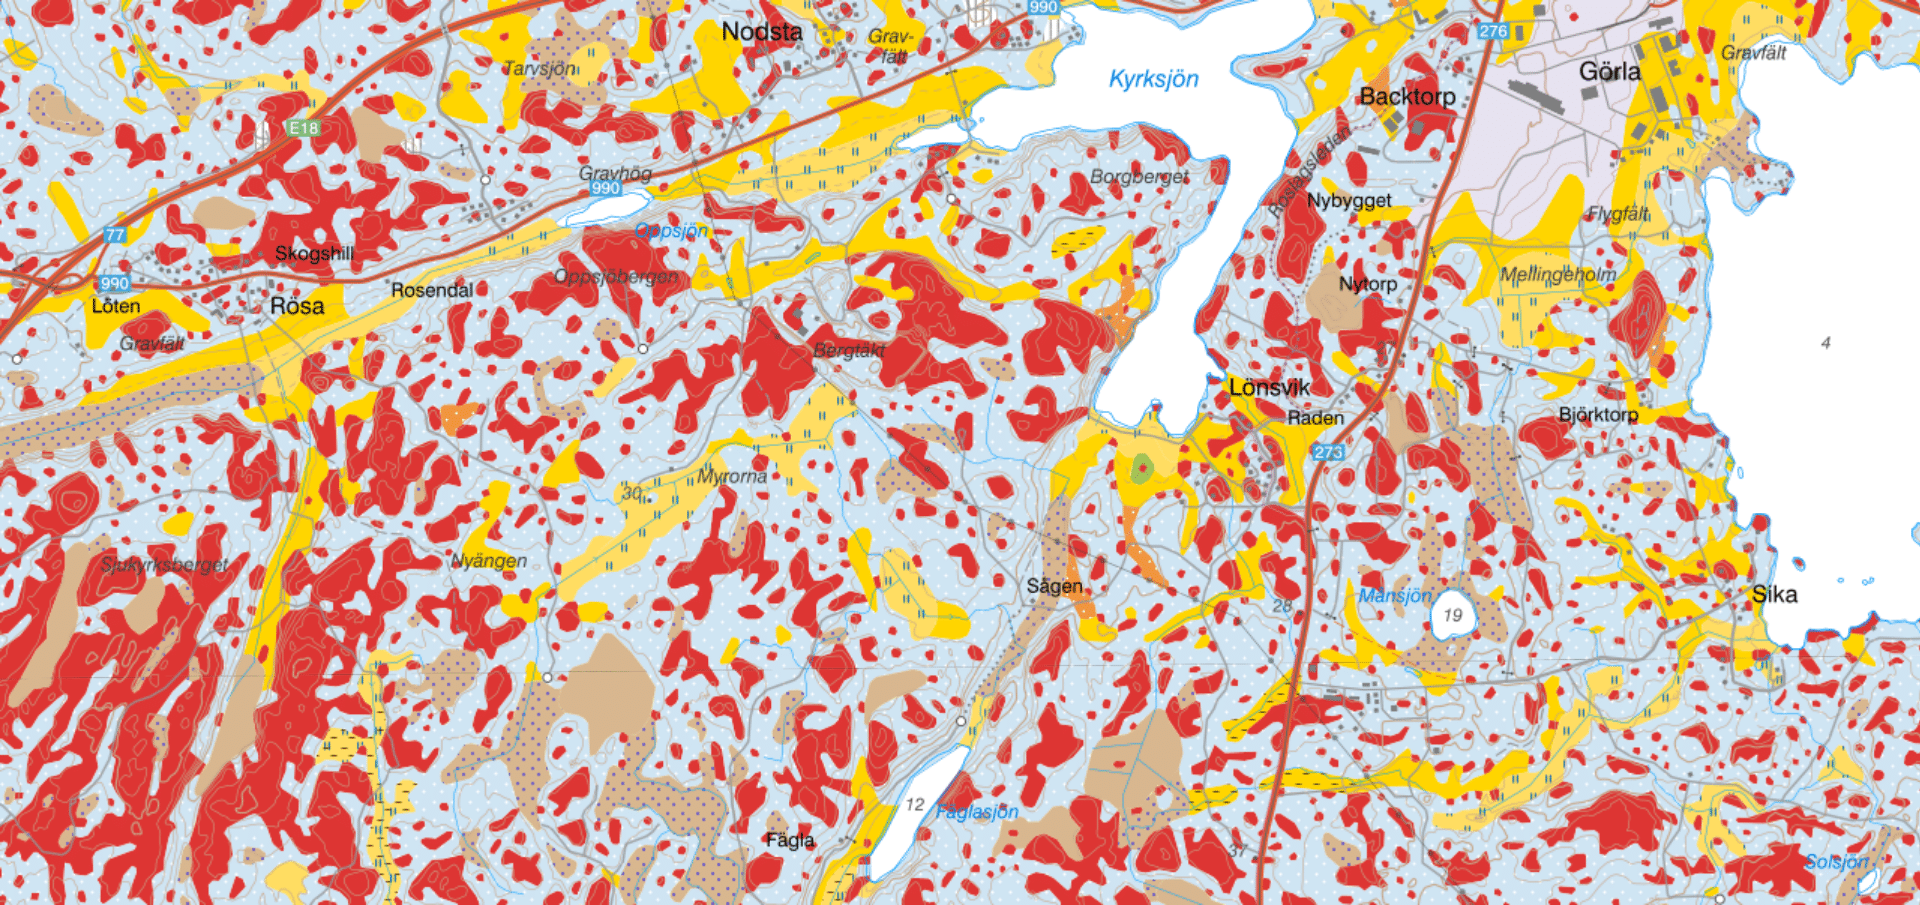 Jordartskarta som bland annat visar Kyrksjön och Nodsta. Kartan har olika färger